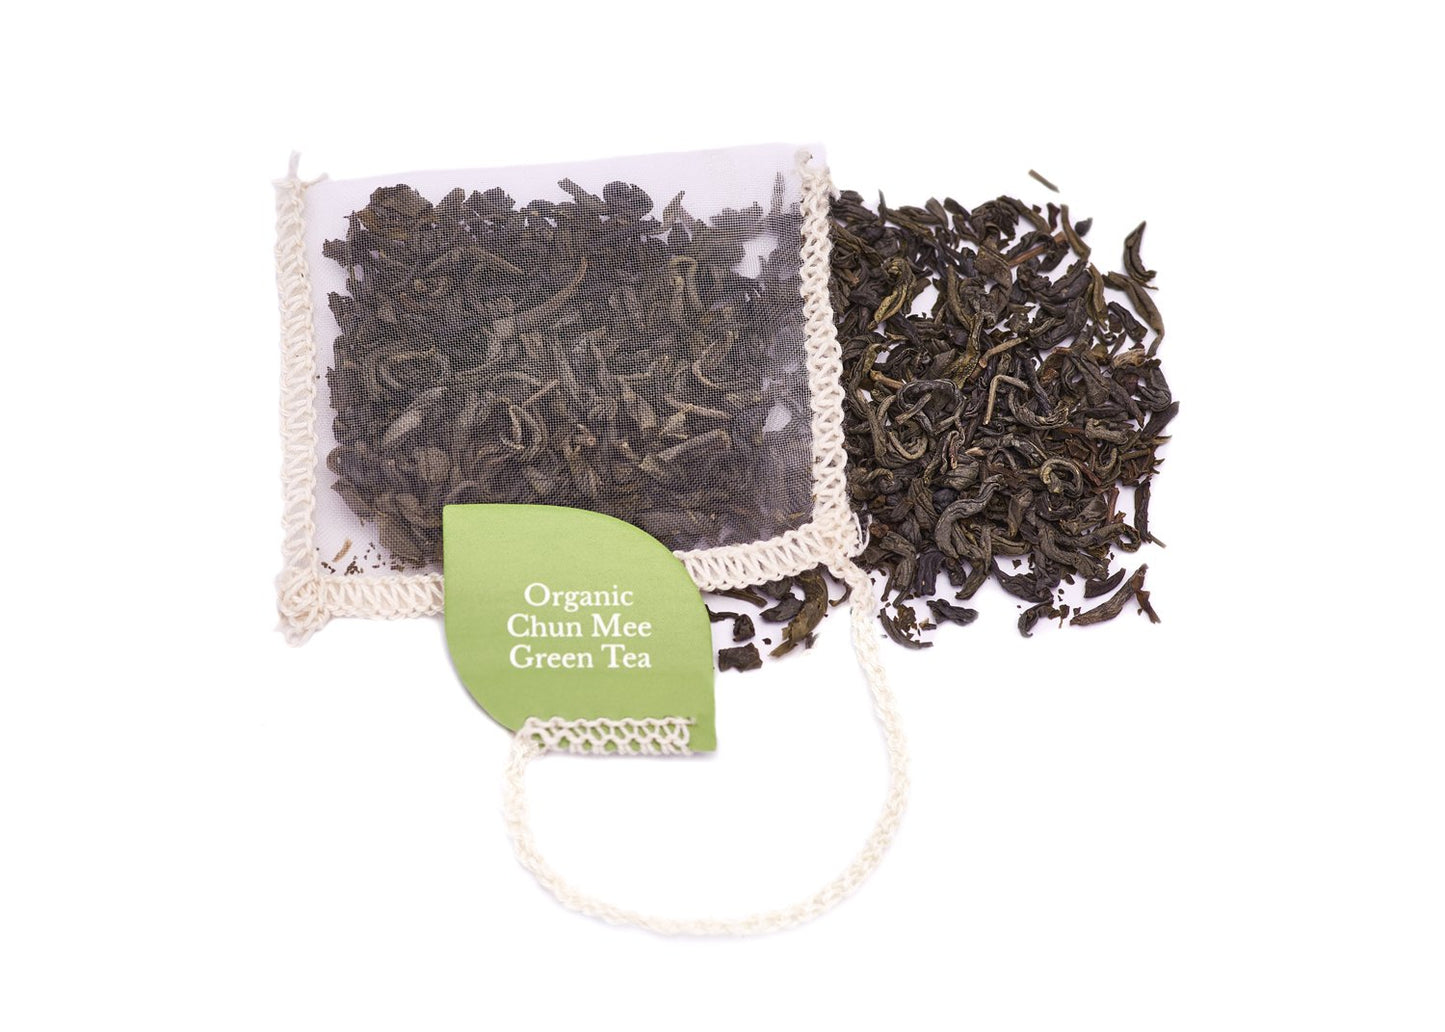 Chun Mee Green Tea.